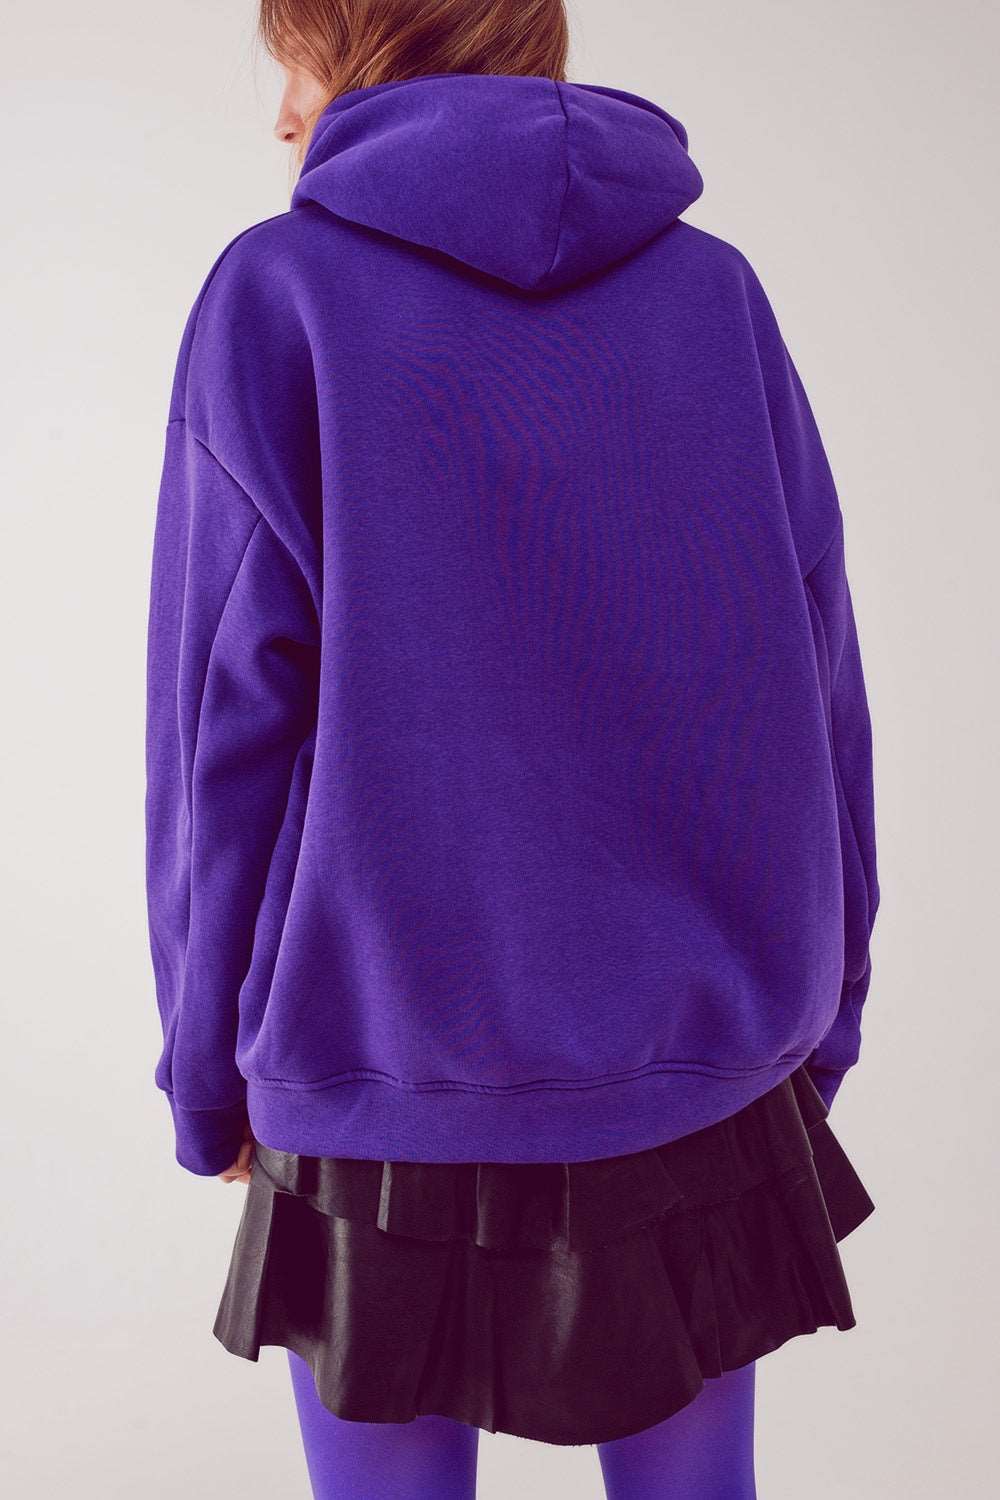 Believe oversized hoodie in purple Szua Store